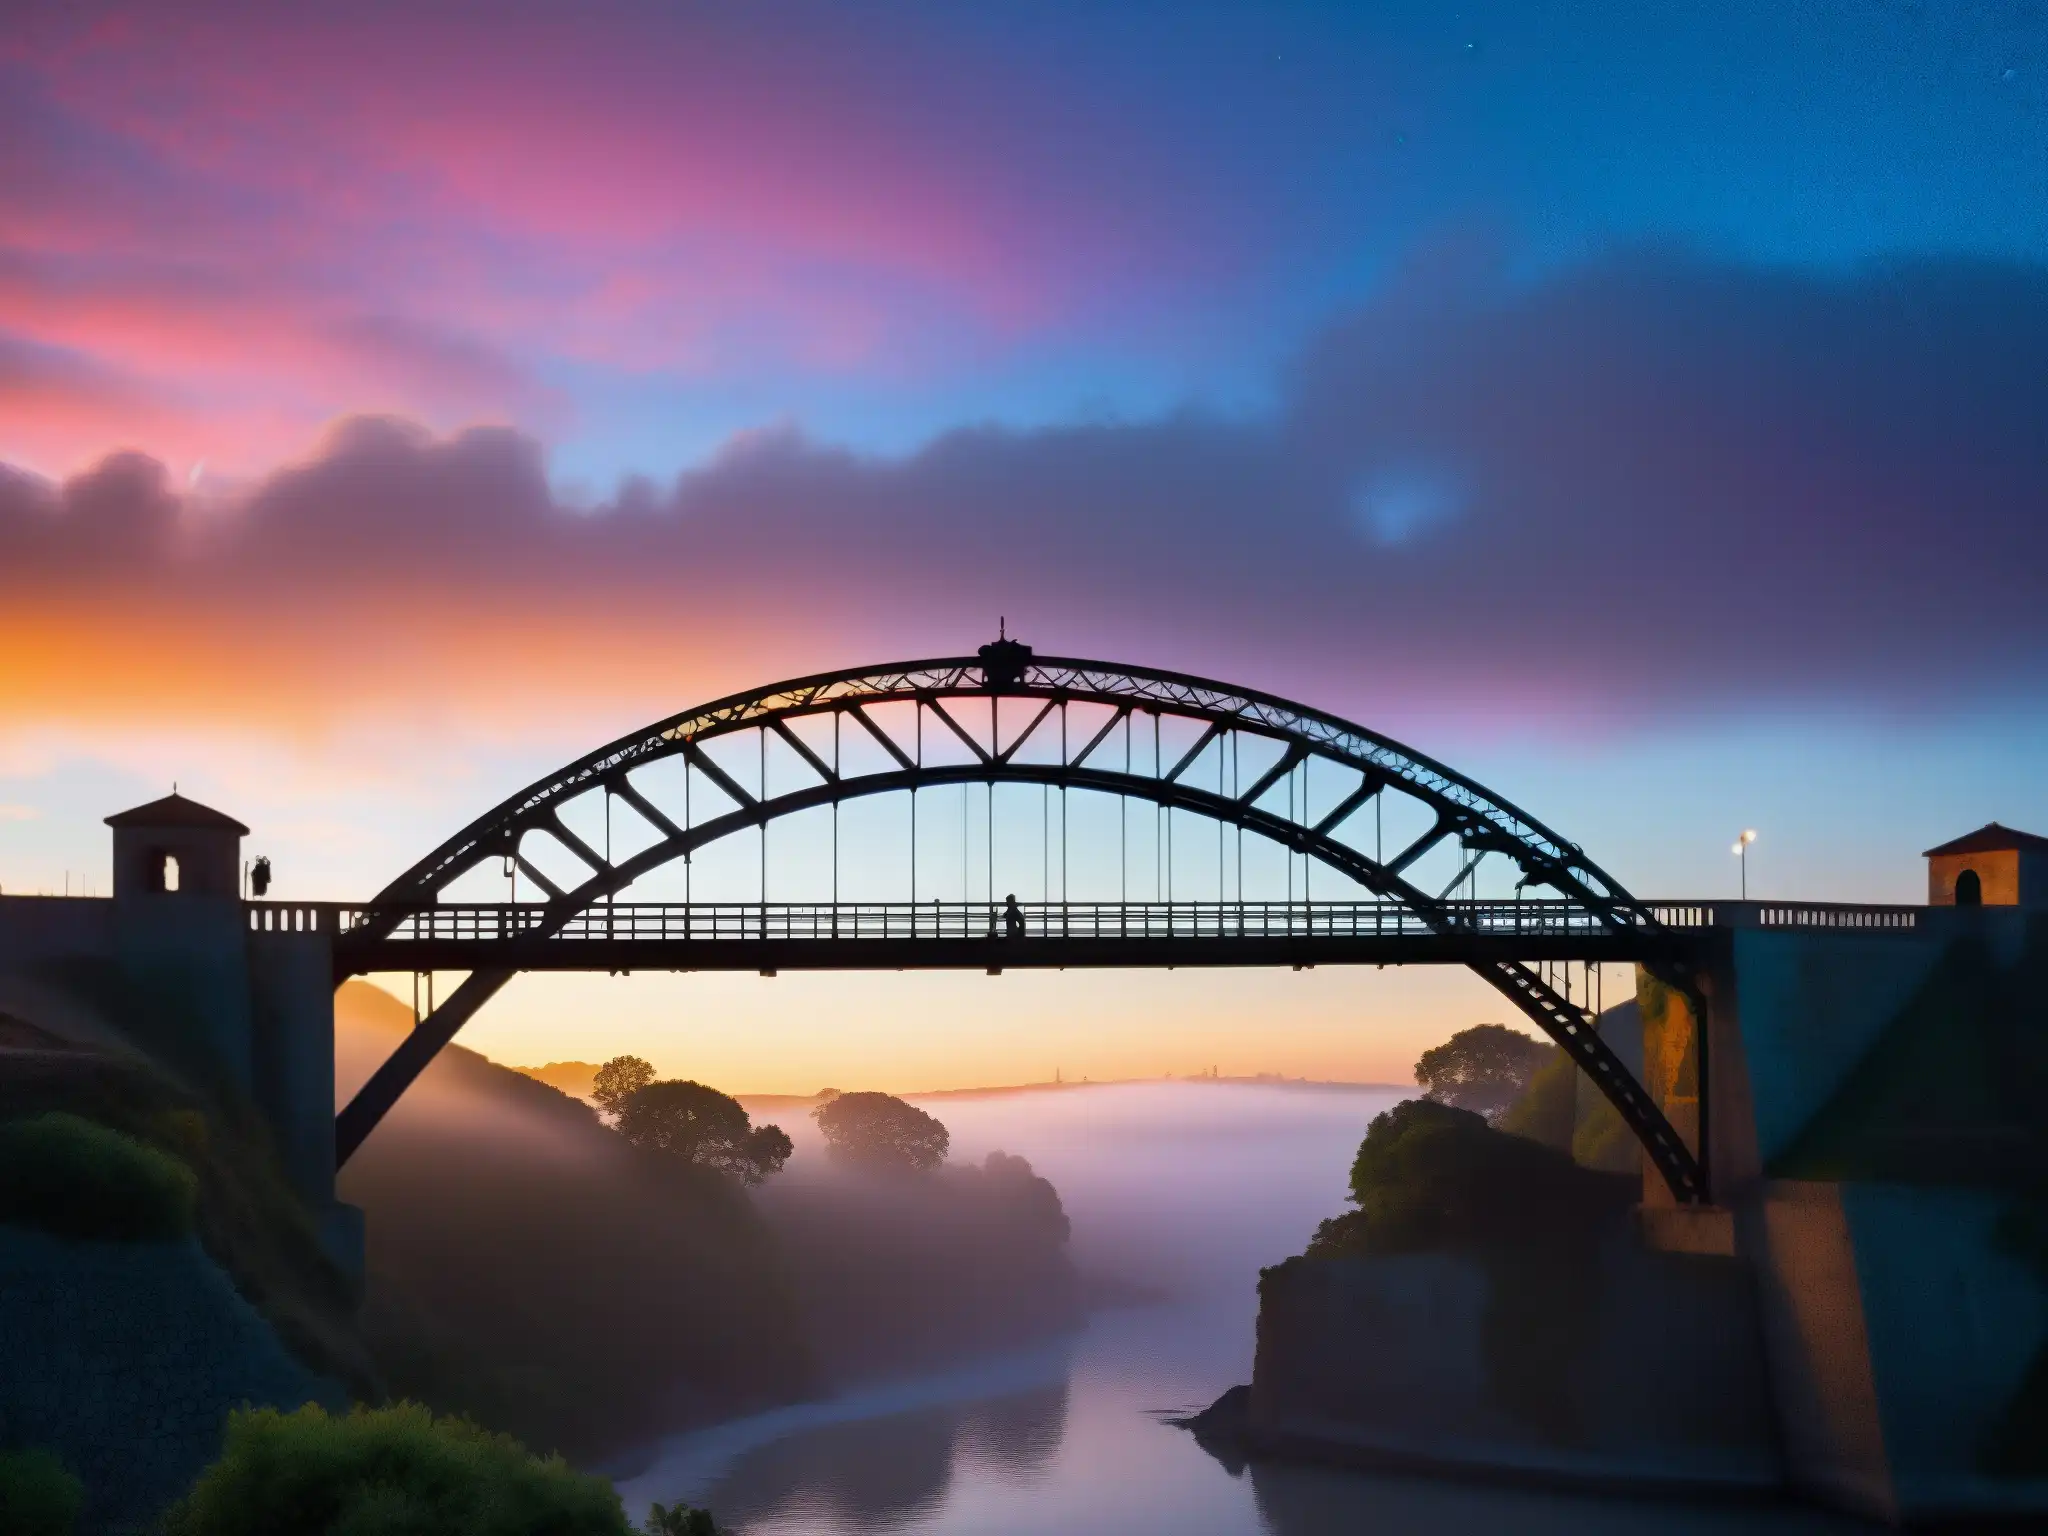 La atmósfera misteriosa y cautivadora del Puente de Metlac al atardecer, con su intrincado hierro destacando contra el cielo vibrante